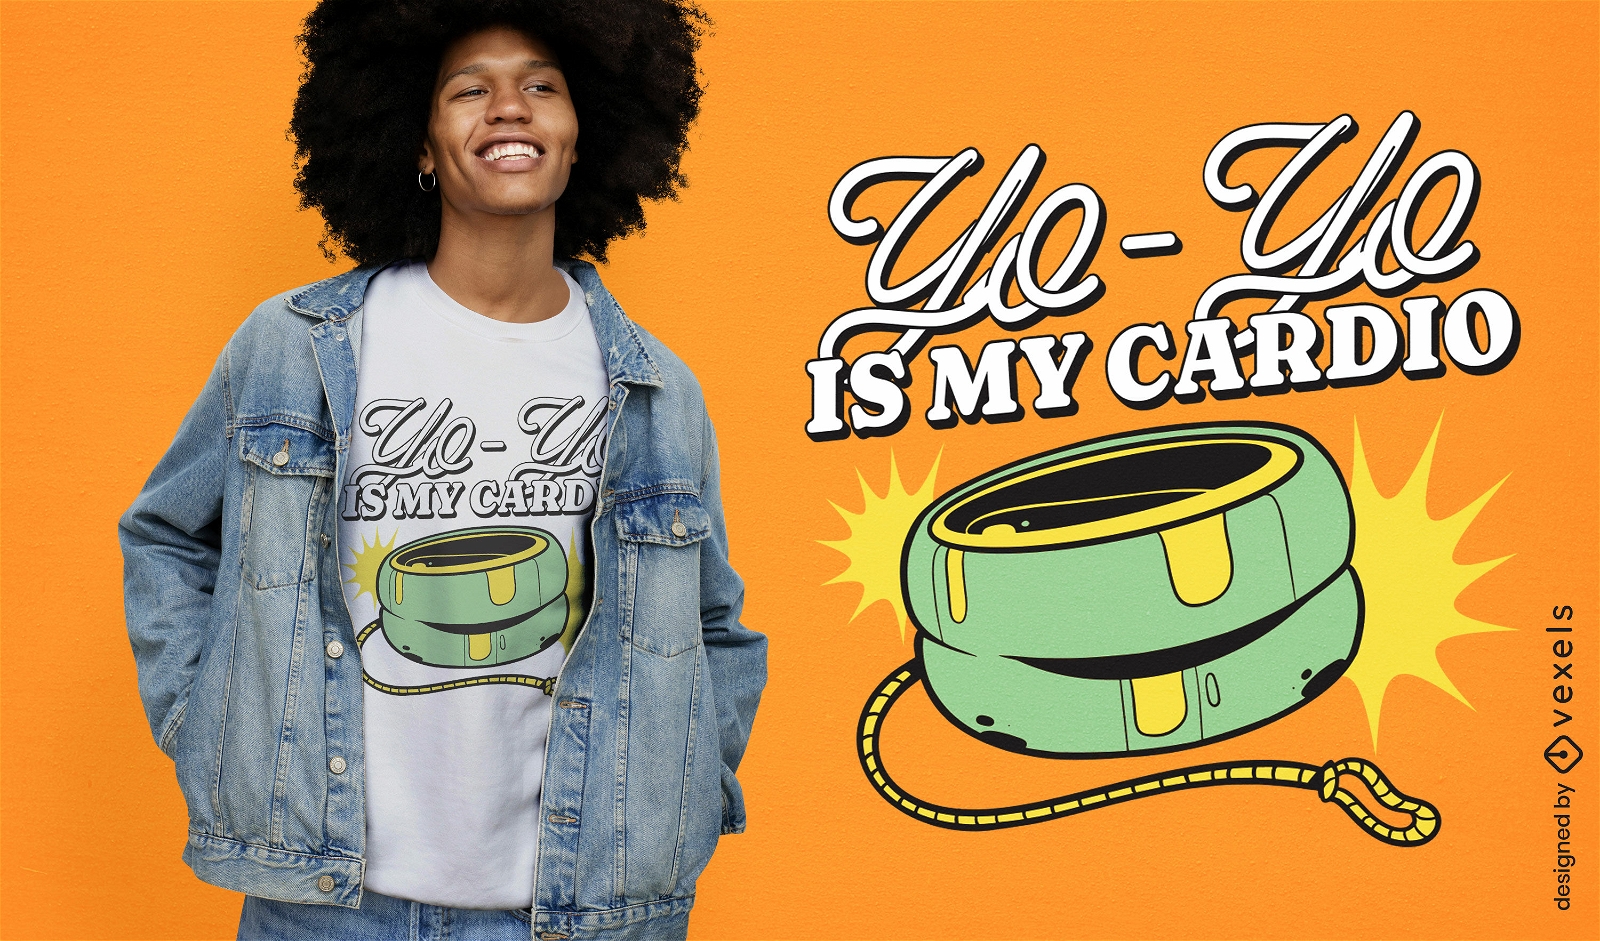 Yo-yo cardio quote t-shirt design